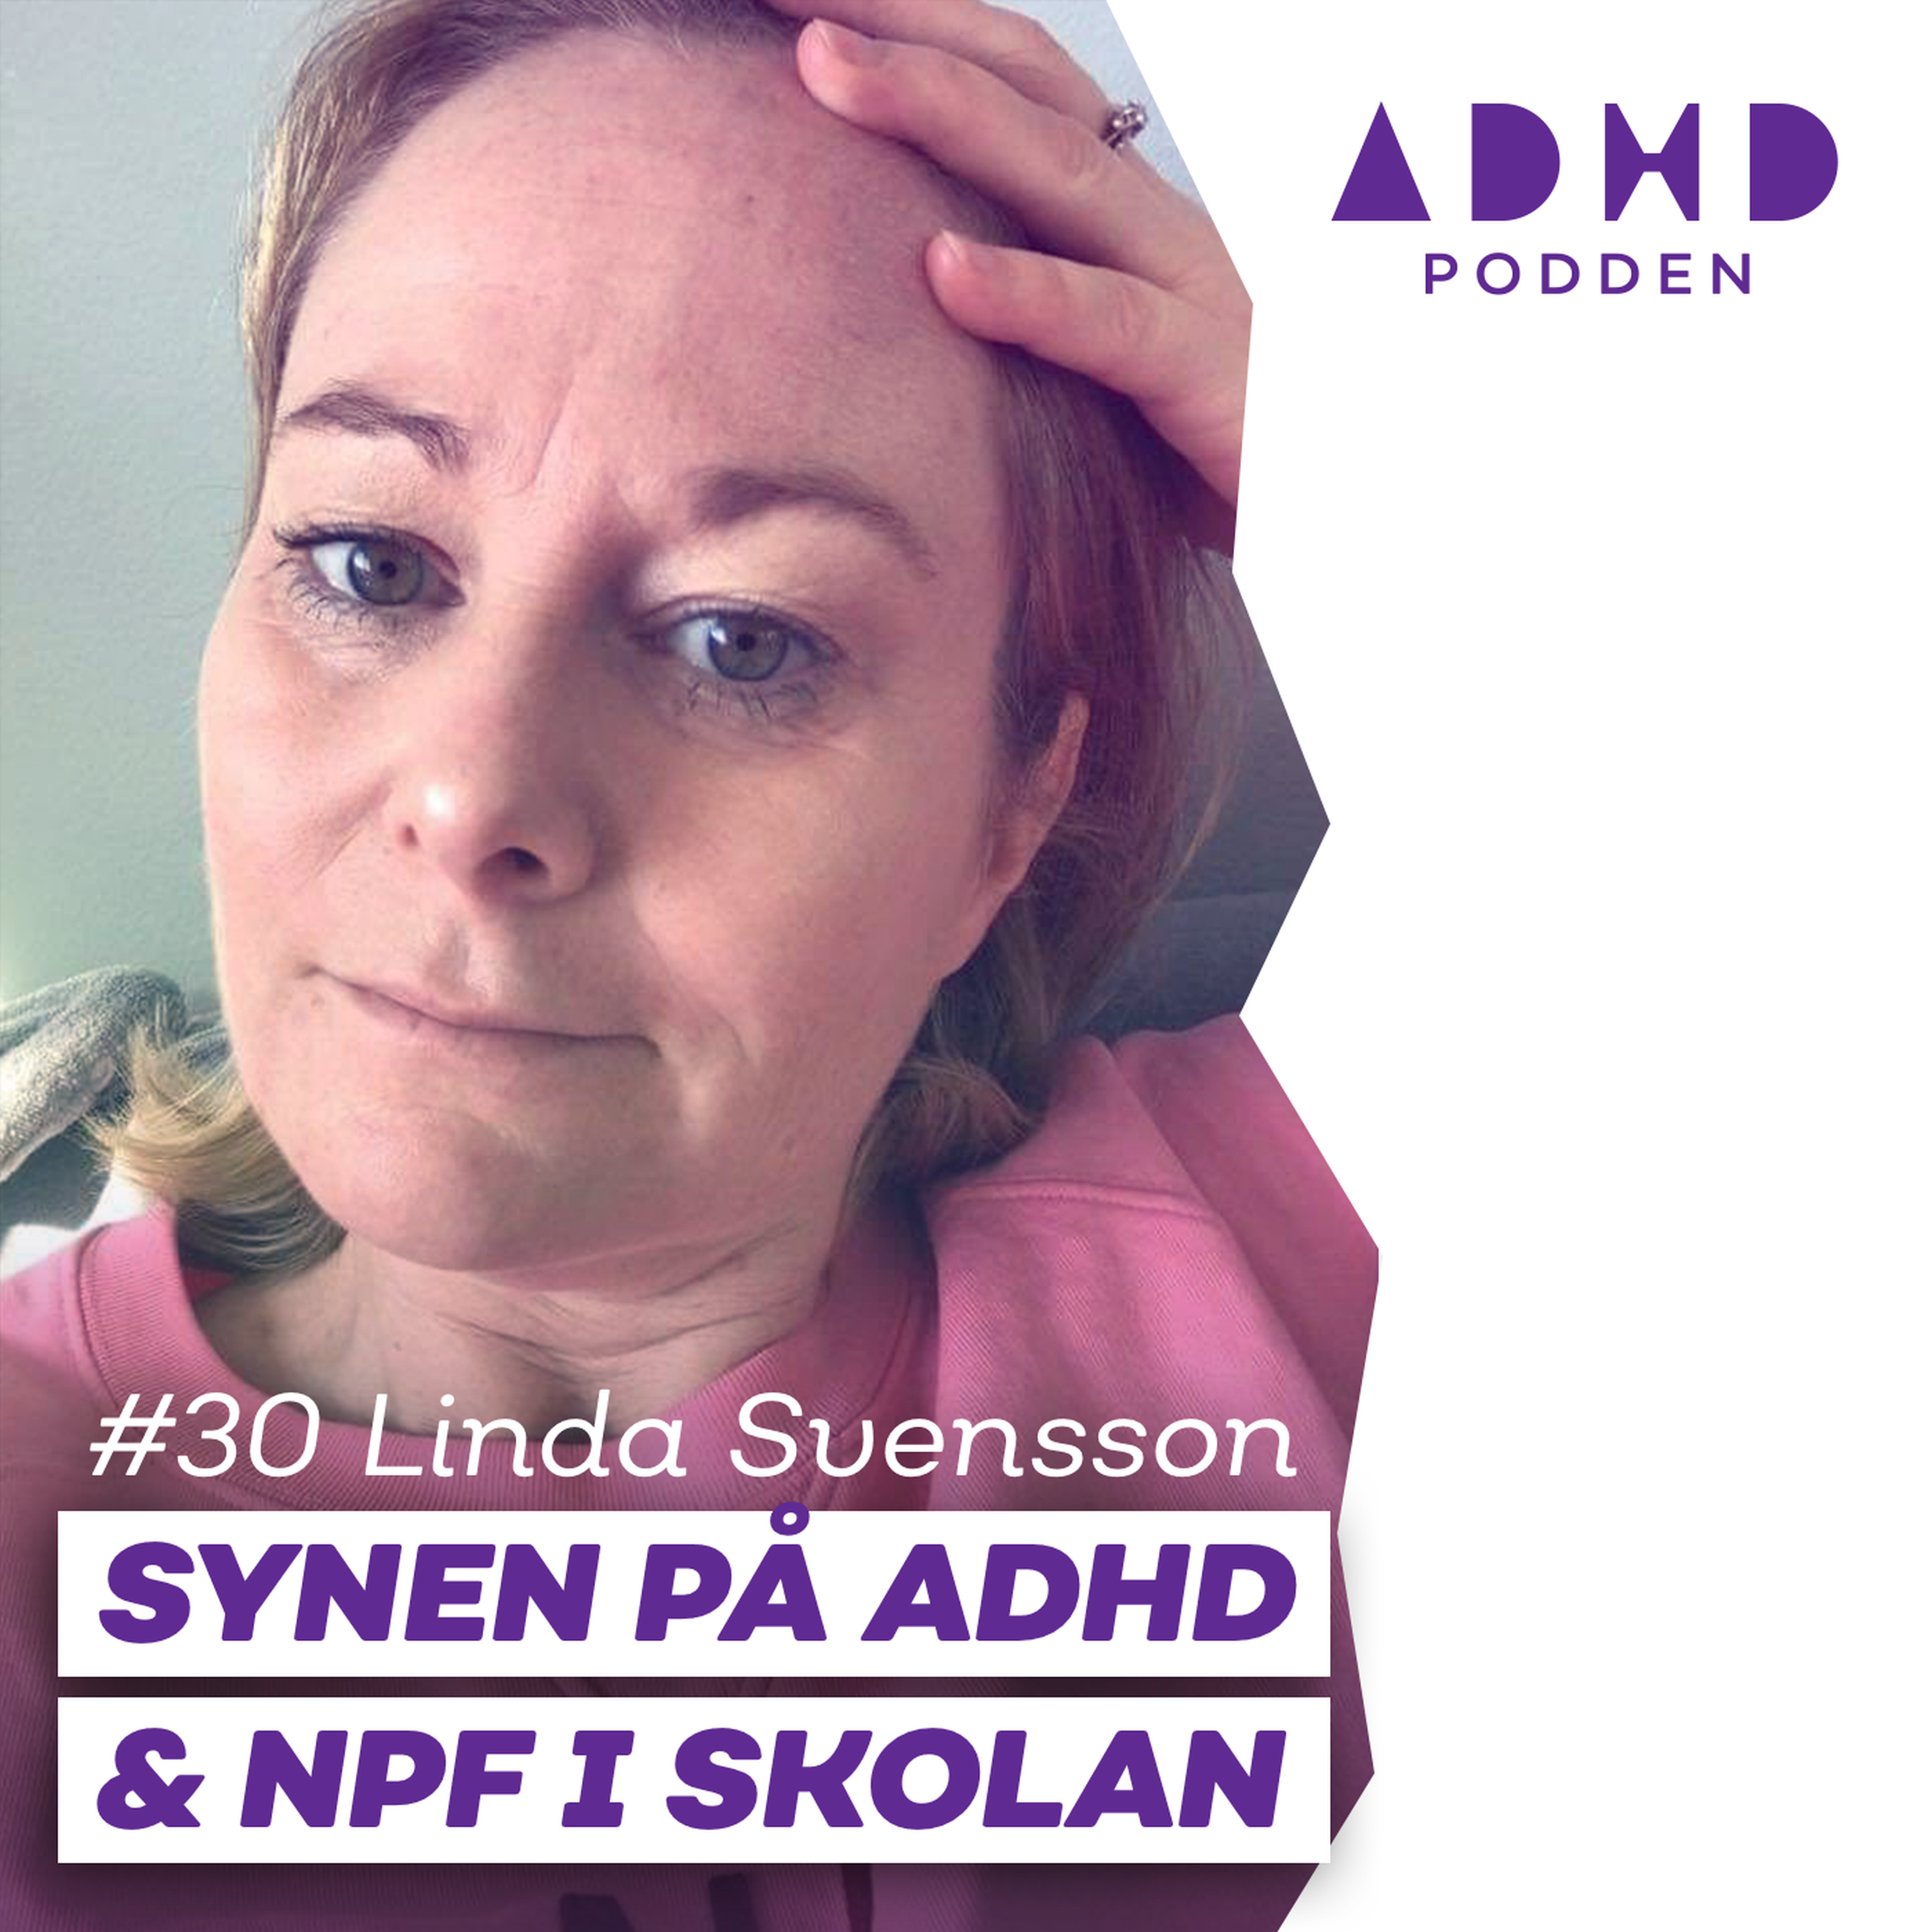 #30 OM SYNEN PÅ ADHD I SKOLAN - med Linda Svensson